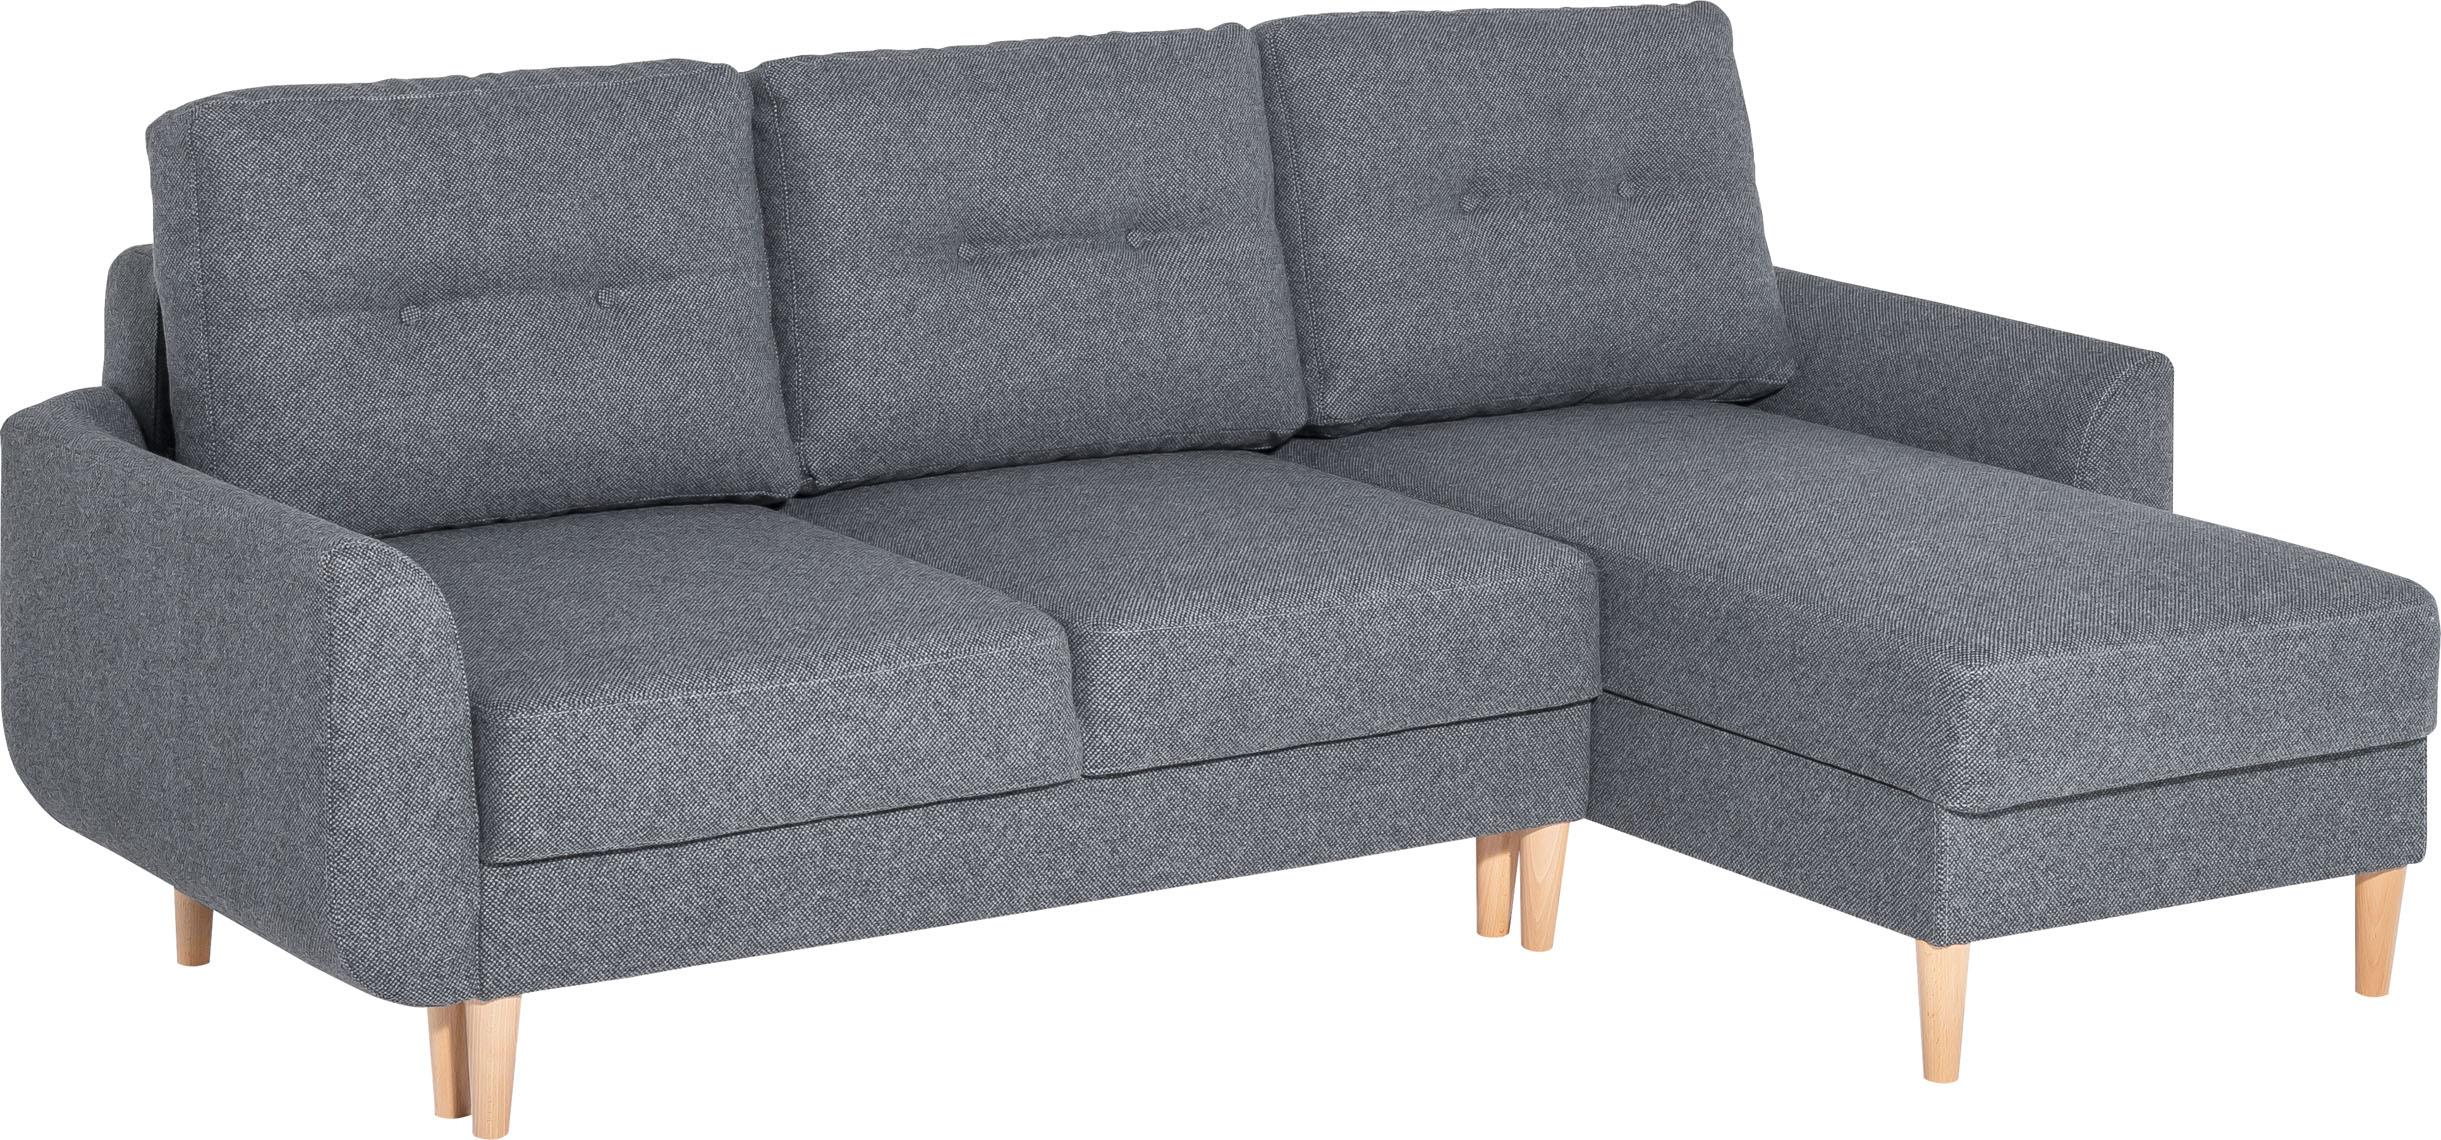 Corner sofa bed Cotta